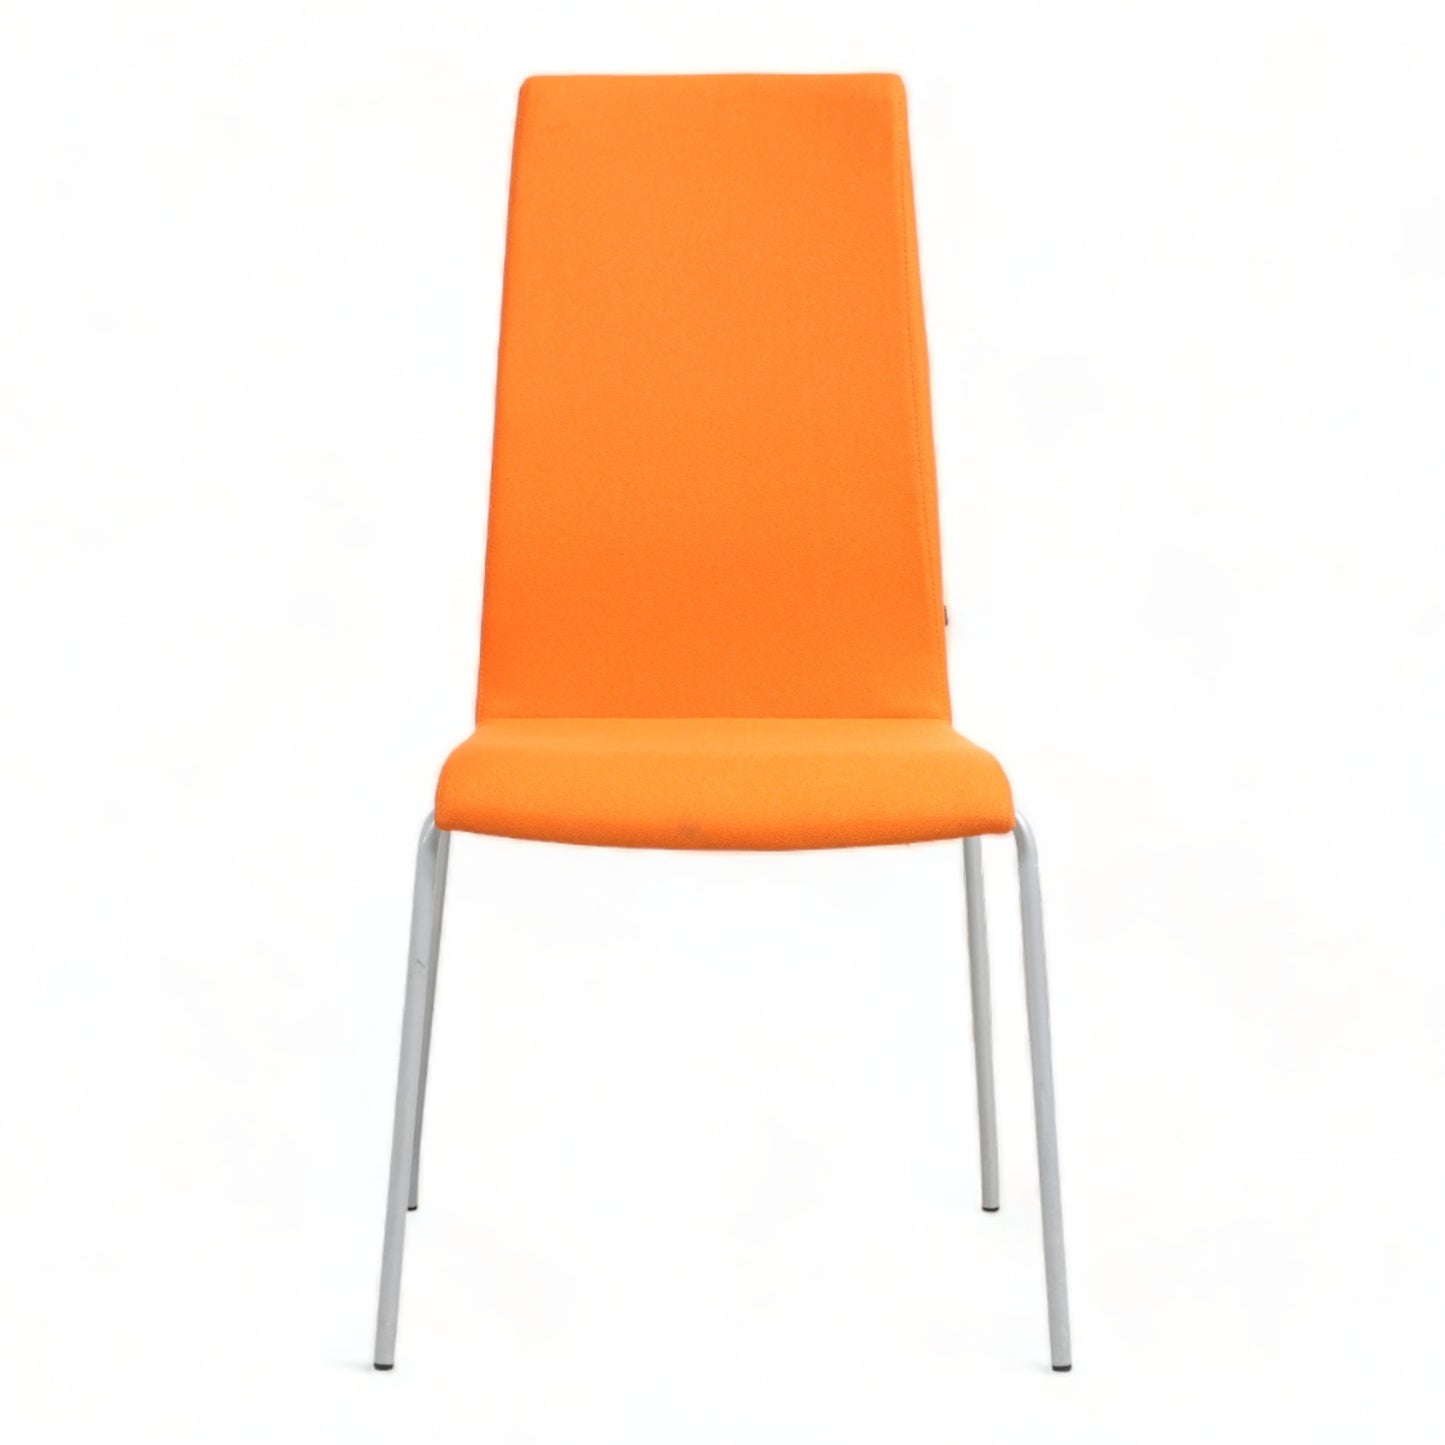 Nyrenset | ScanSørlie stol med oransje trekk